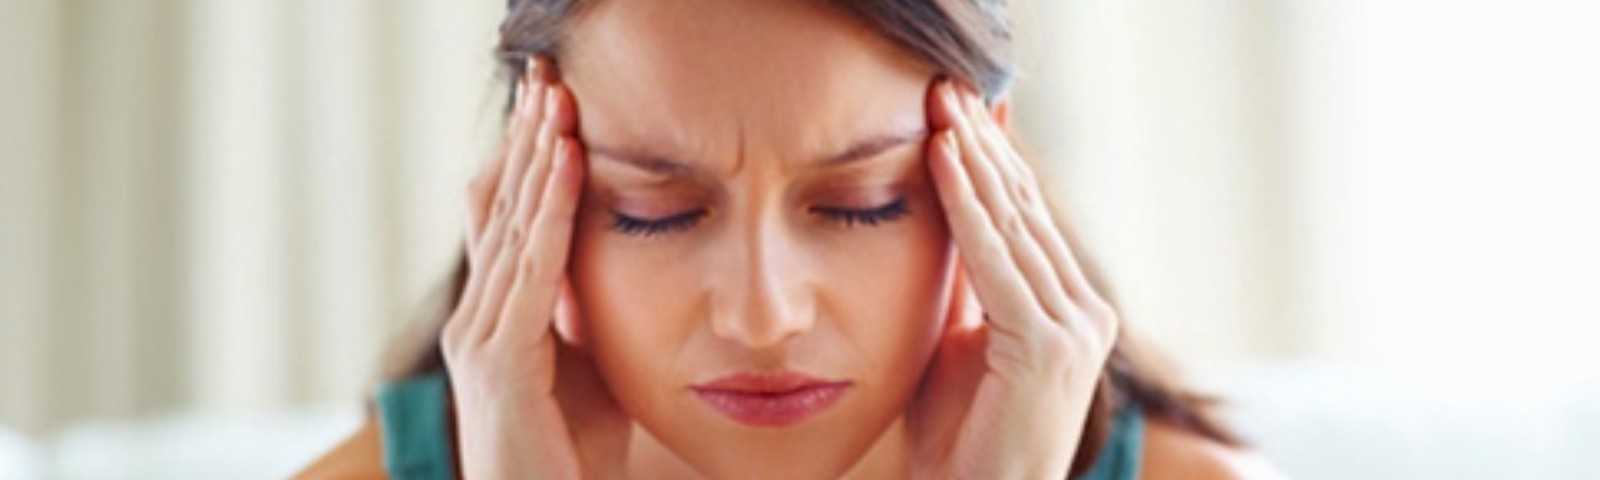 Что такое тремор головы и какие симптомы у взрослых?